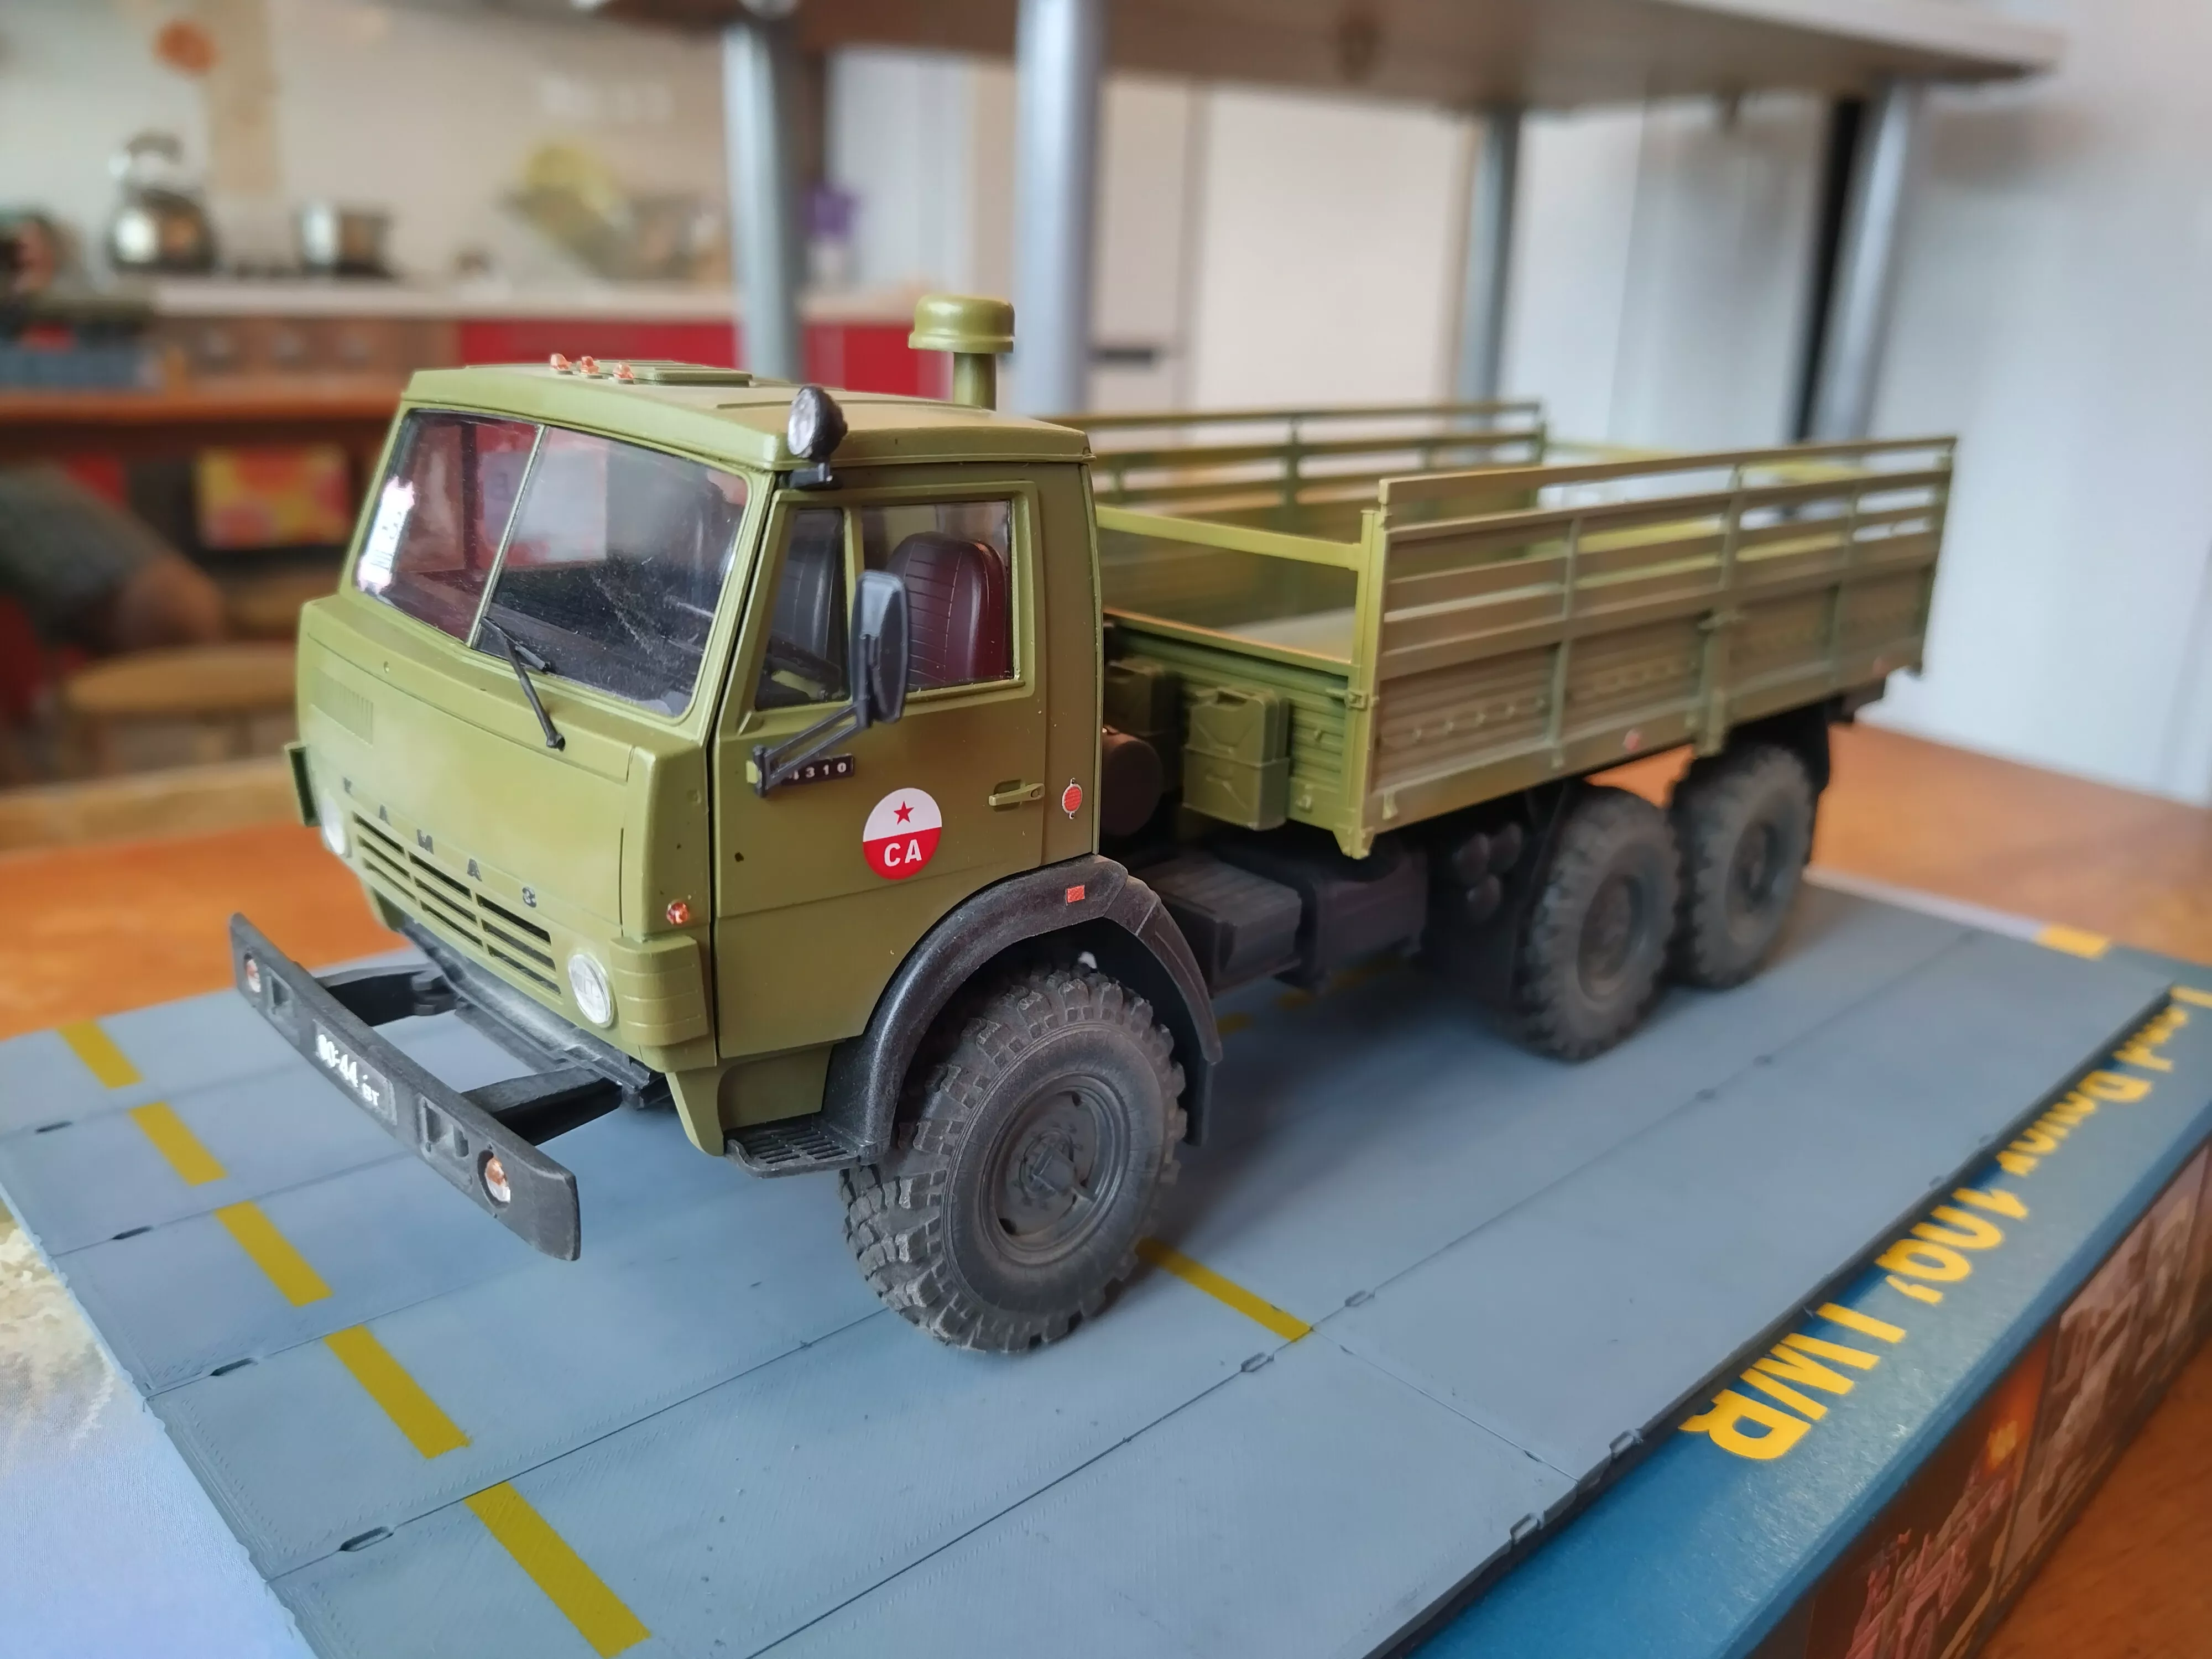 Советский шестиколесный армейский грузовой автомобиль